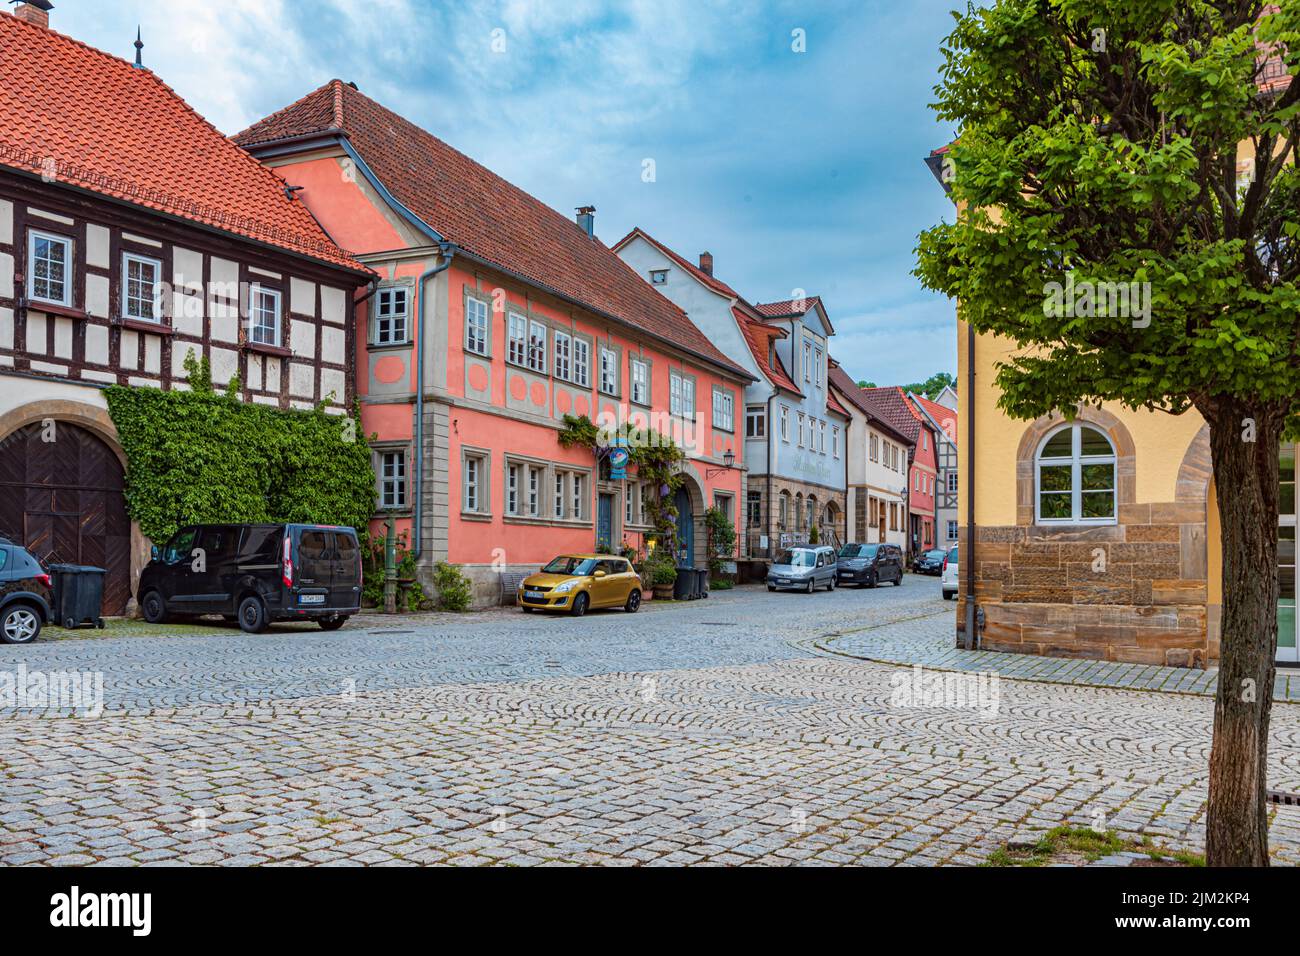 SESSLACH, BAVIERA, ALEMANIA - CIRCA MAYO, 2022: El paisaje urbano de la ciudad de Sesslach, Alemania. Foto de stock